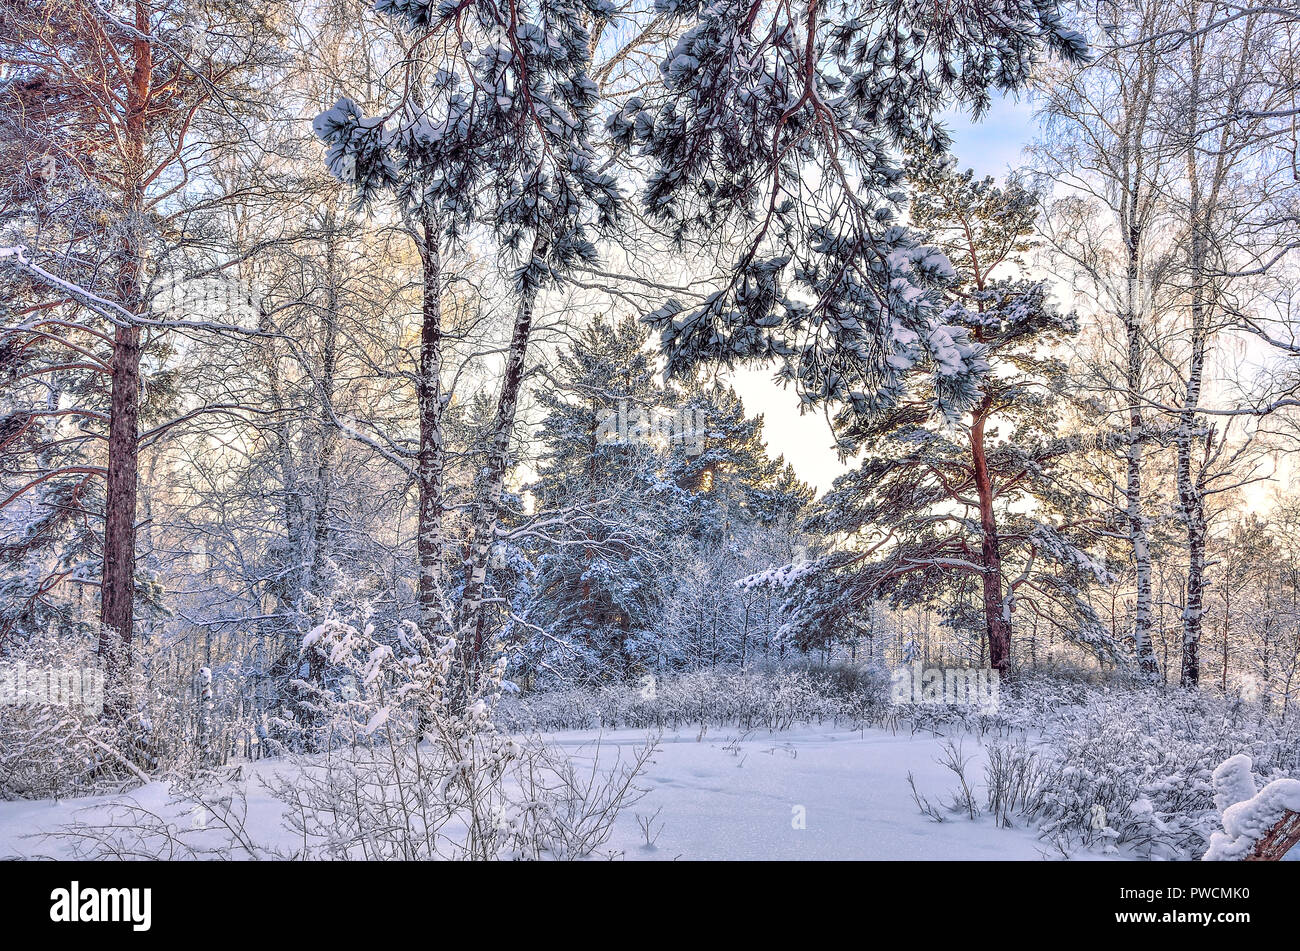 La bellezza della natura invernale - la favola dei boschi innevati, tinta di rosa di inverno mattina su bianco tronchi di betulle, snowy pini,abeti e boccole - il pupazzo di neve Foto Stock